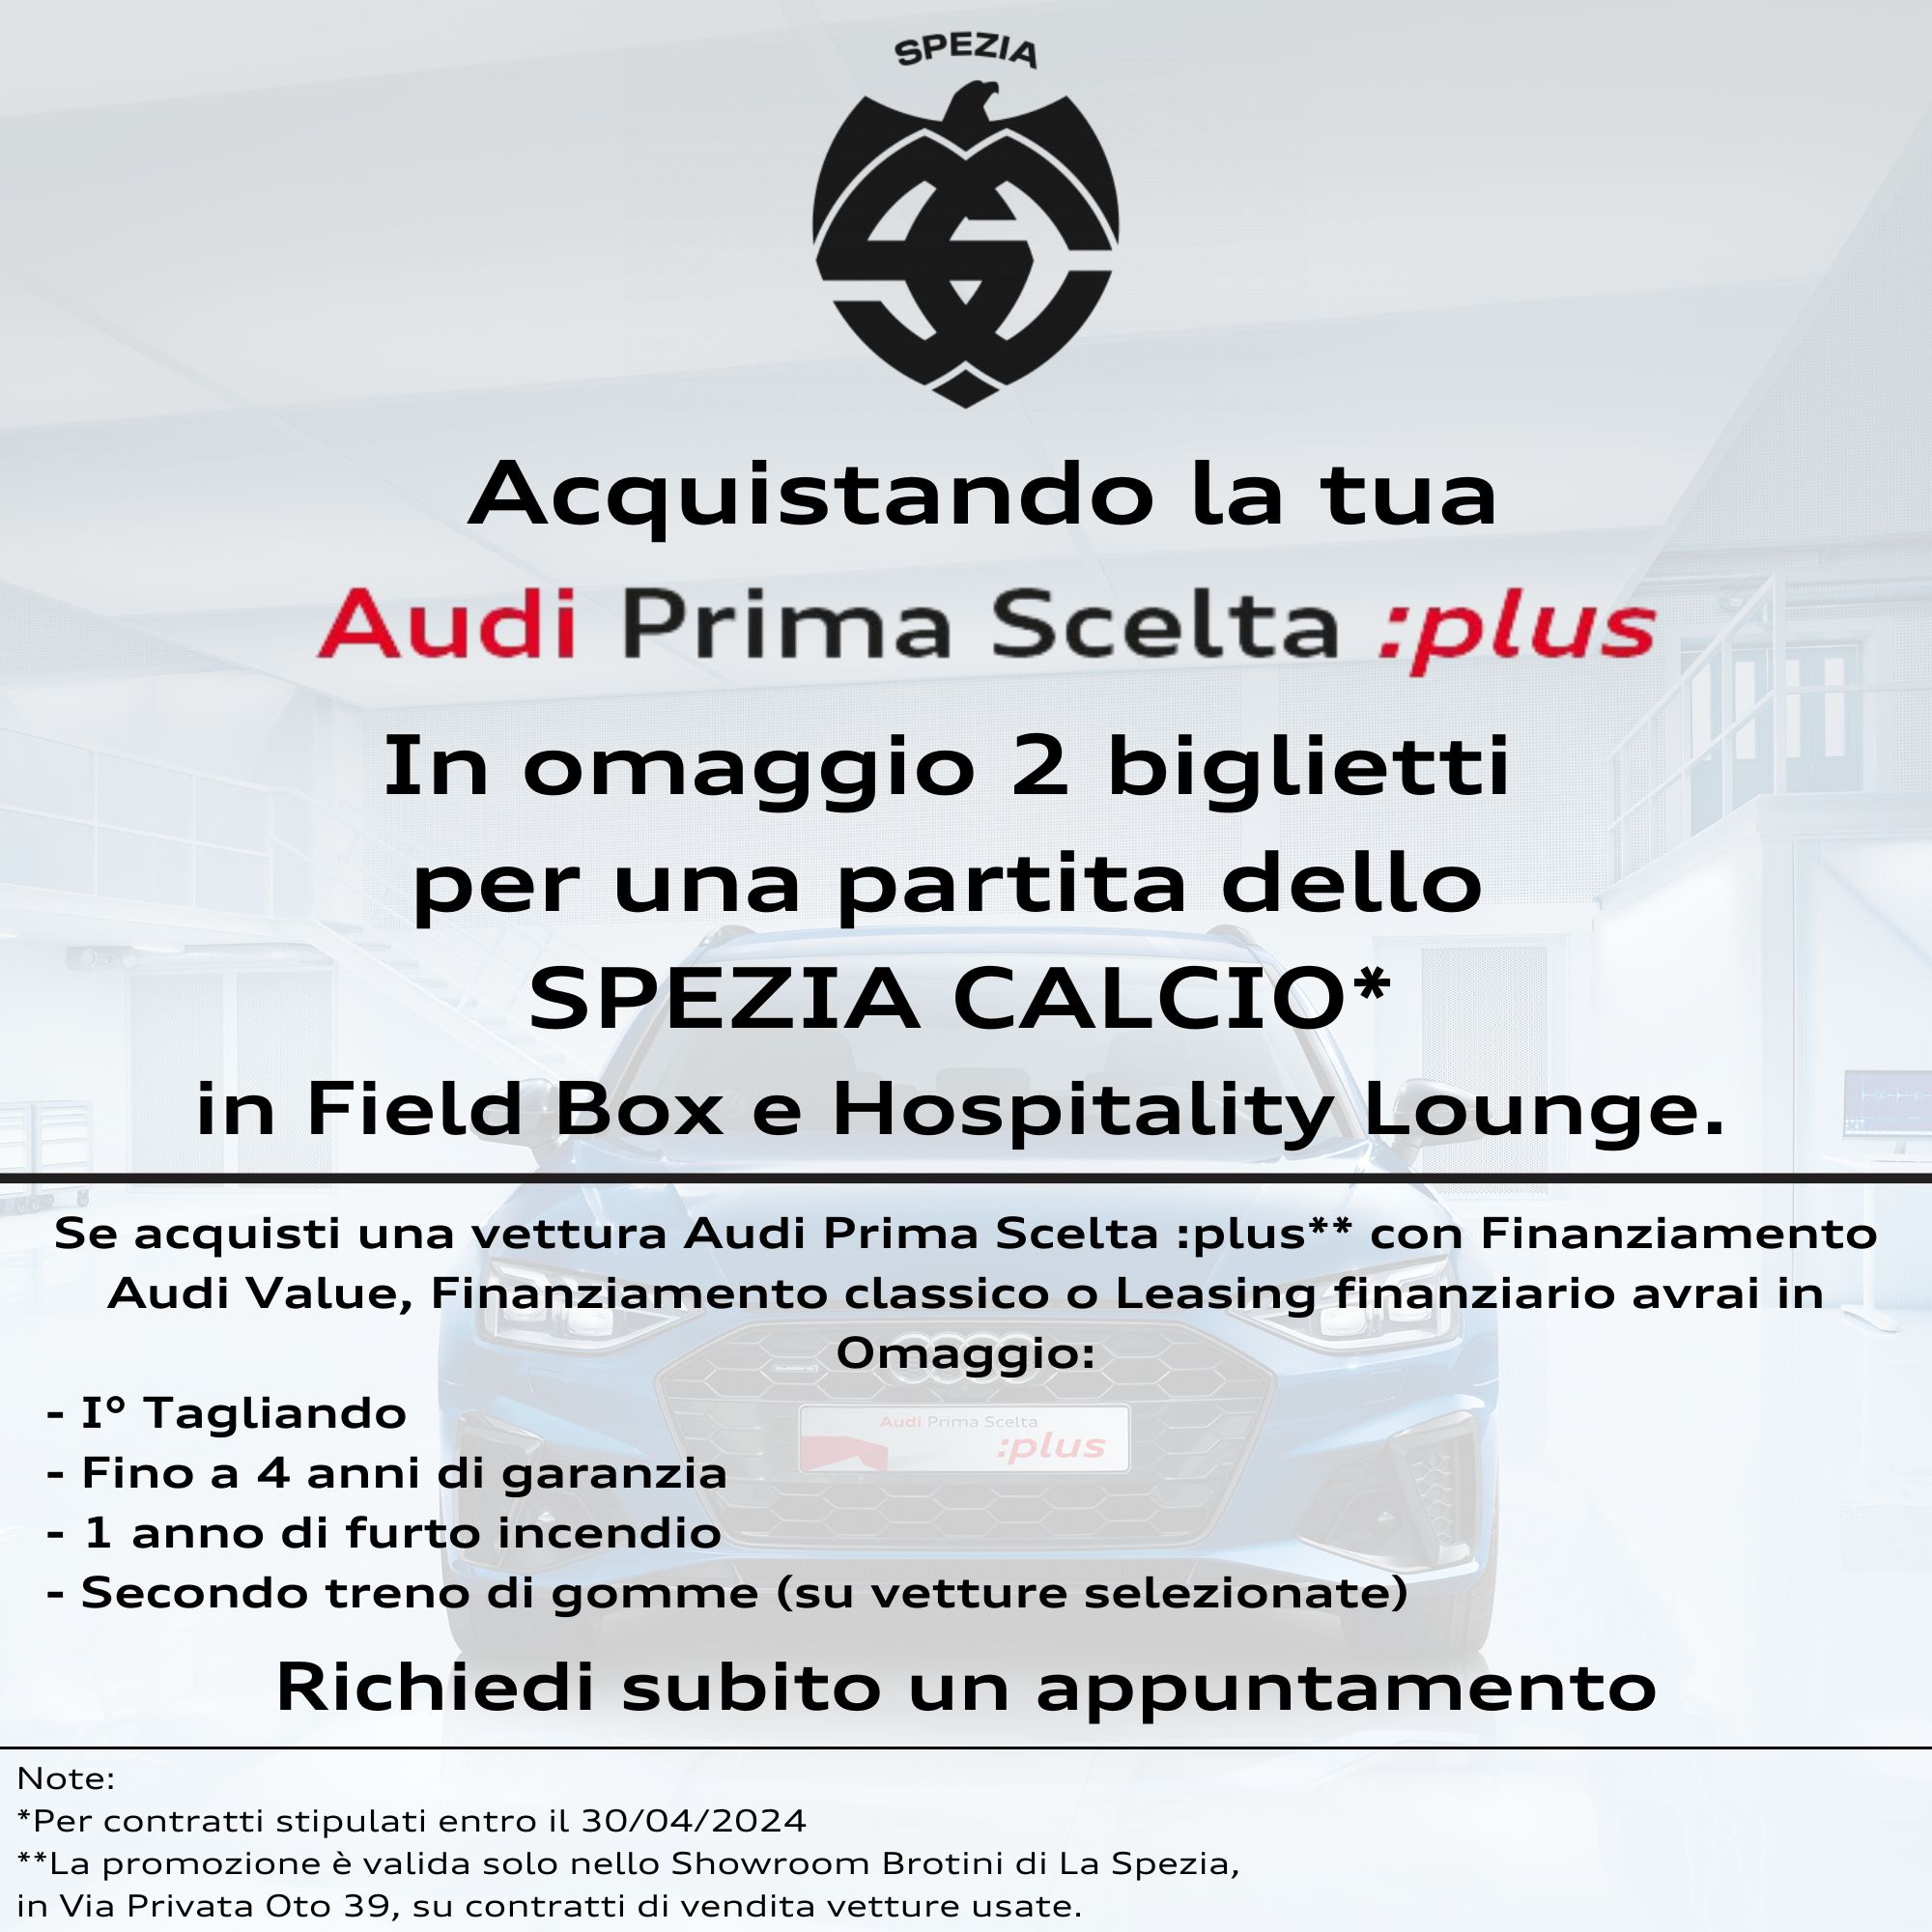 Acquistando La Tua Audi Prima Scelta Plus Avrai In Omaggio 2 Biglietti Con Hospitality Per Una Partita Dello Spezia Calcio. (2)